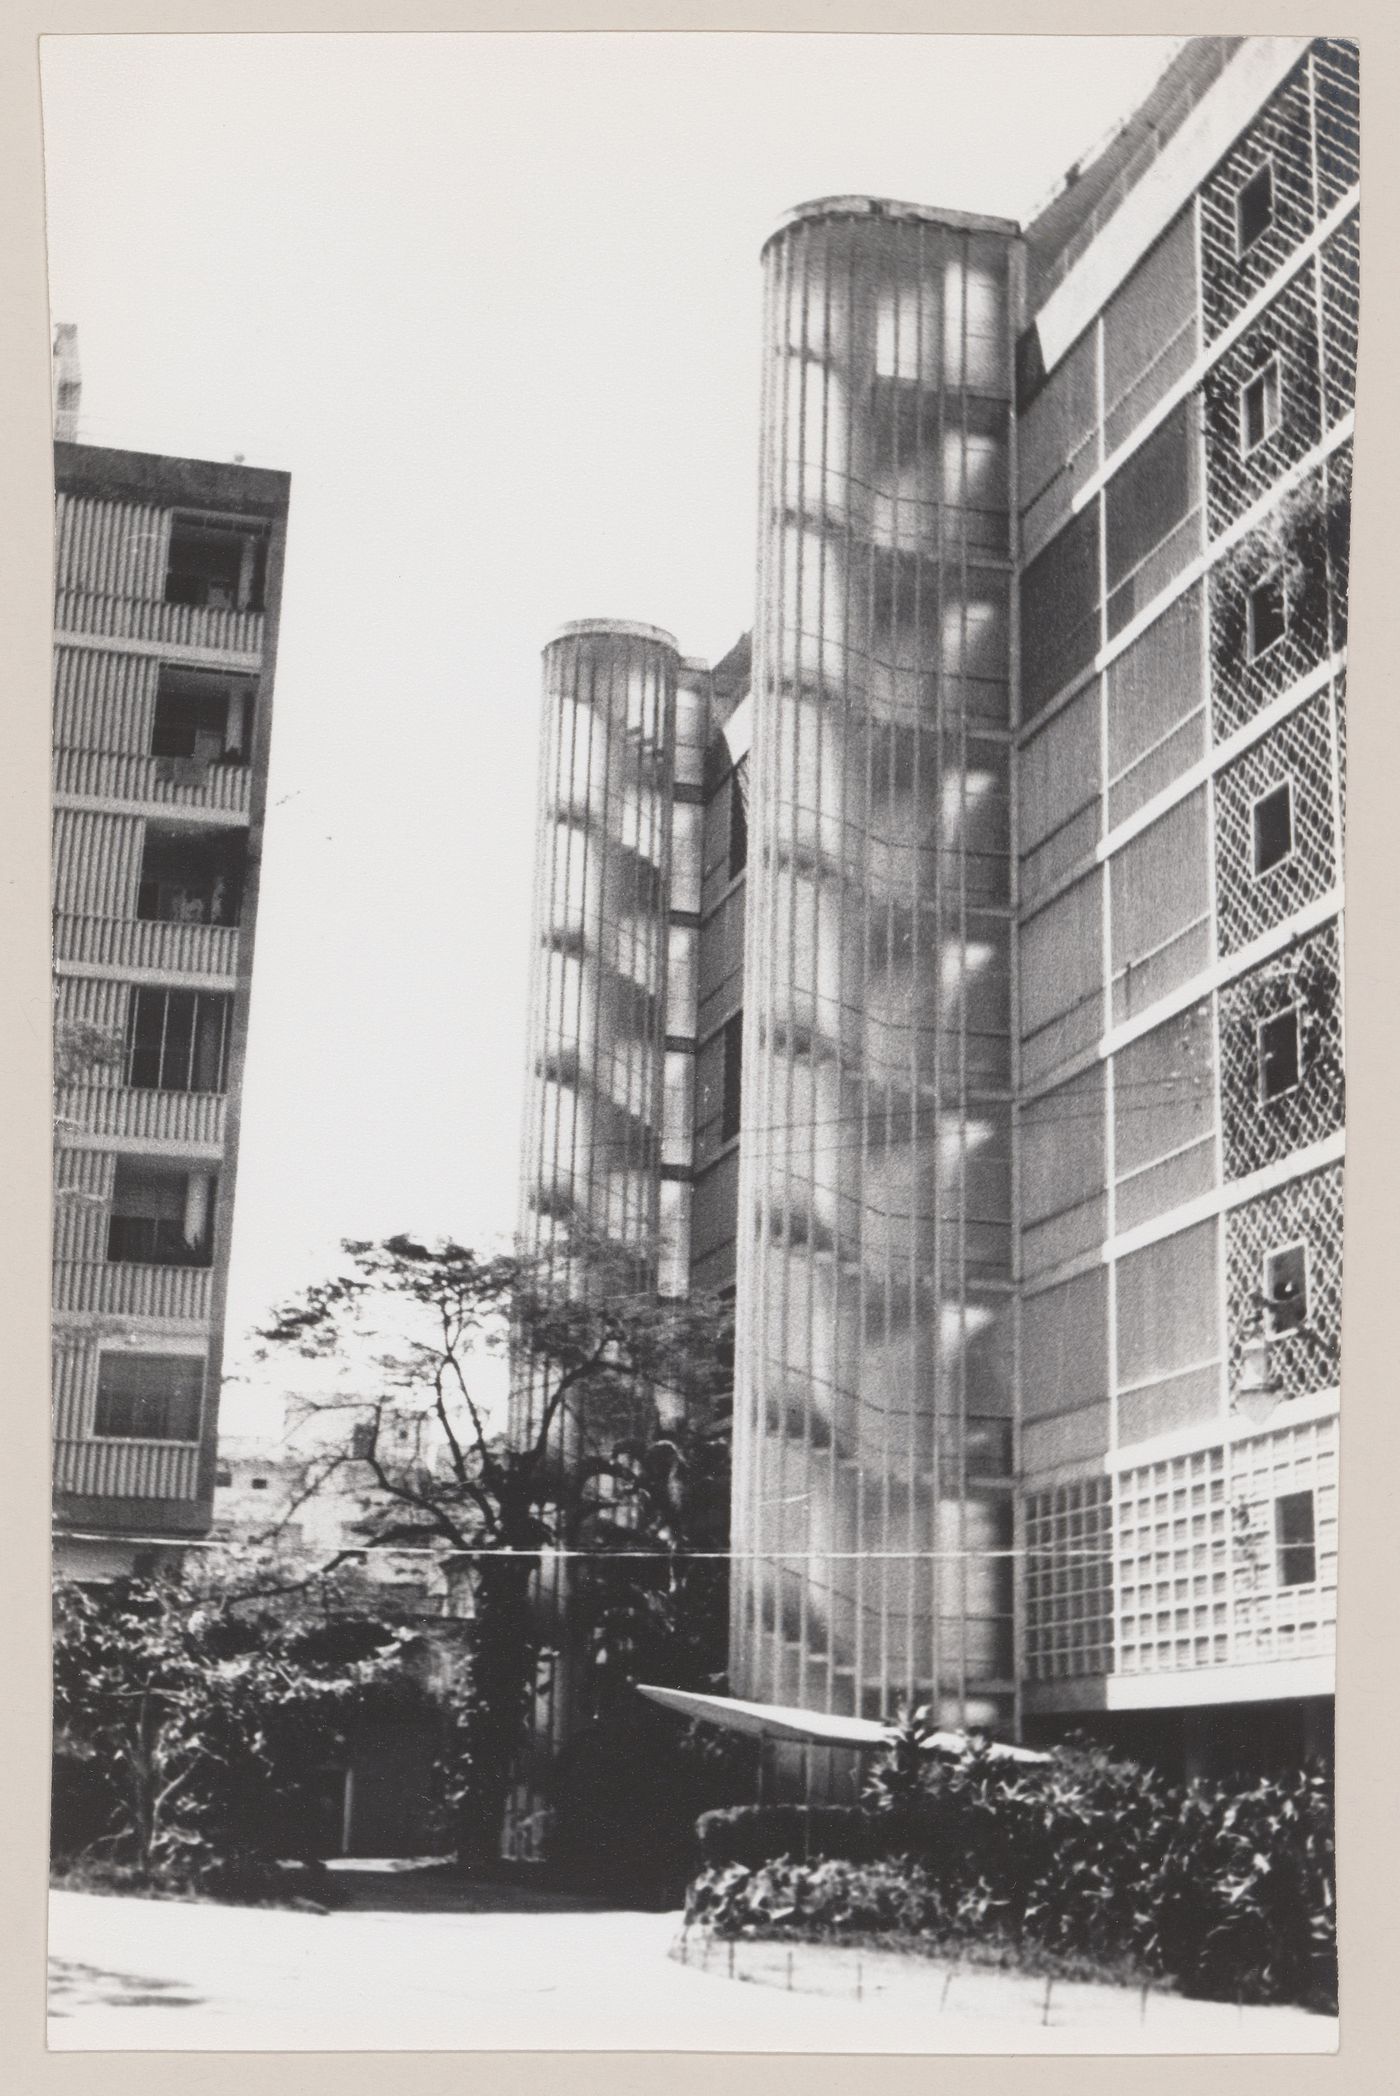 View of Eduardo Guinle Park housing, Rio de Janeiro, Brazil
